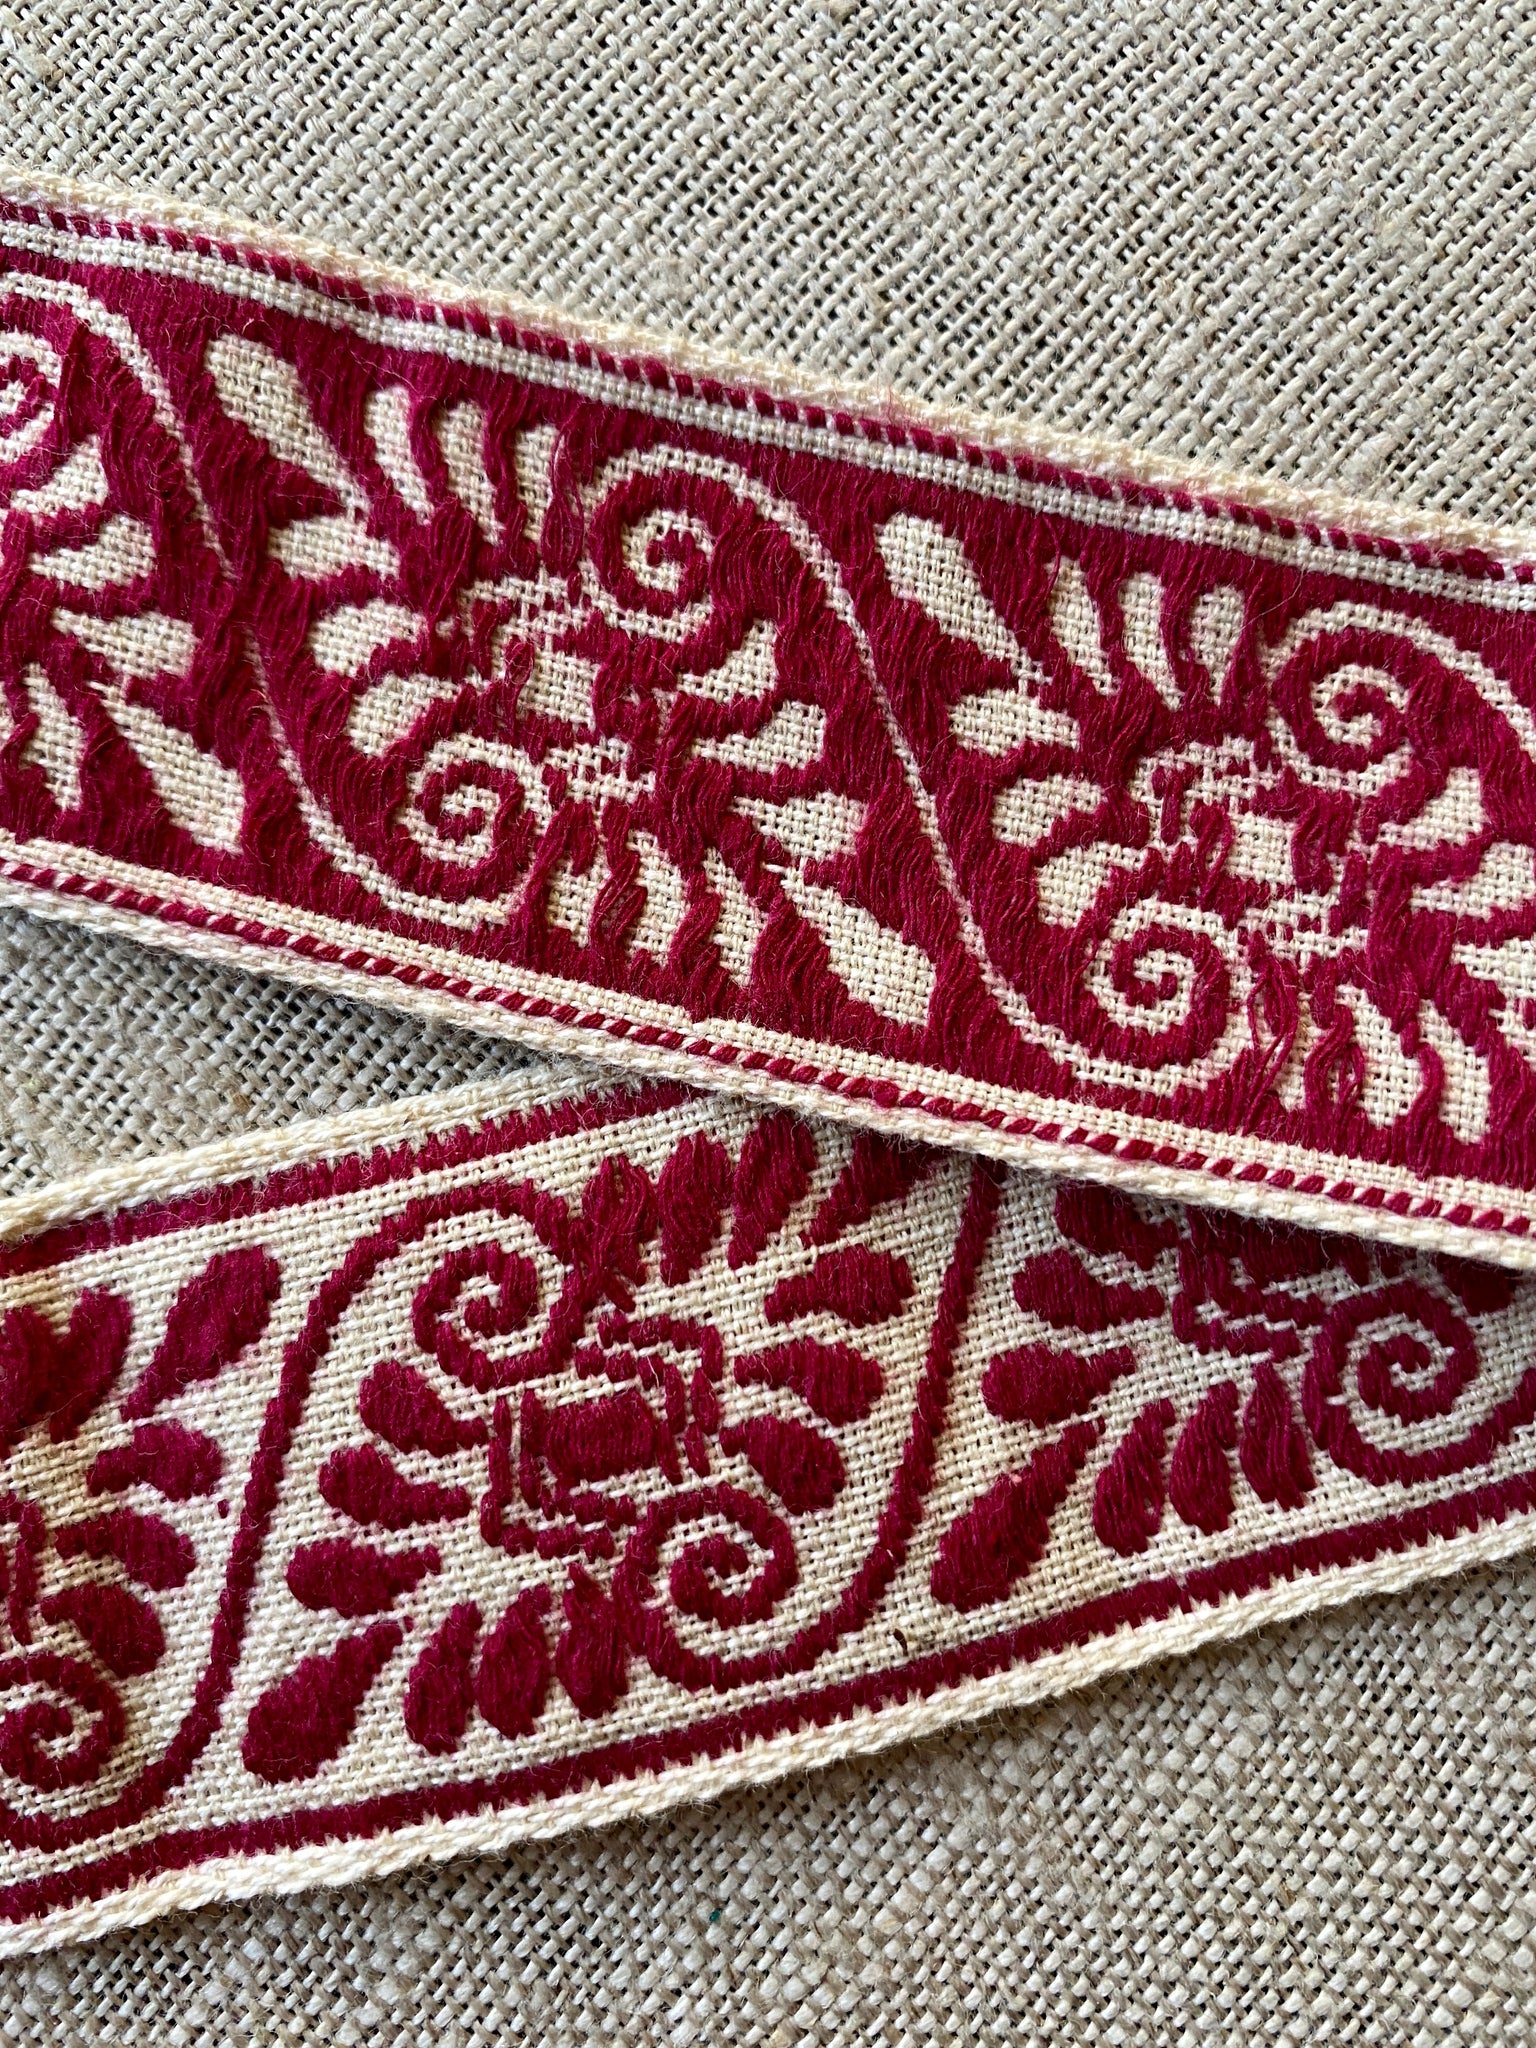 Turkey Red Tatting Thread – Vintage Passementerie